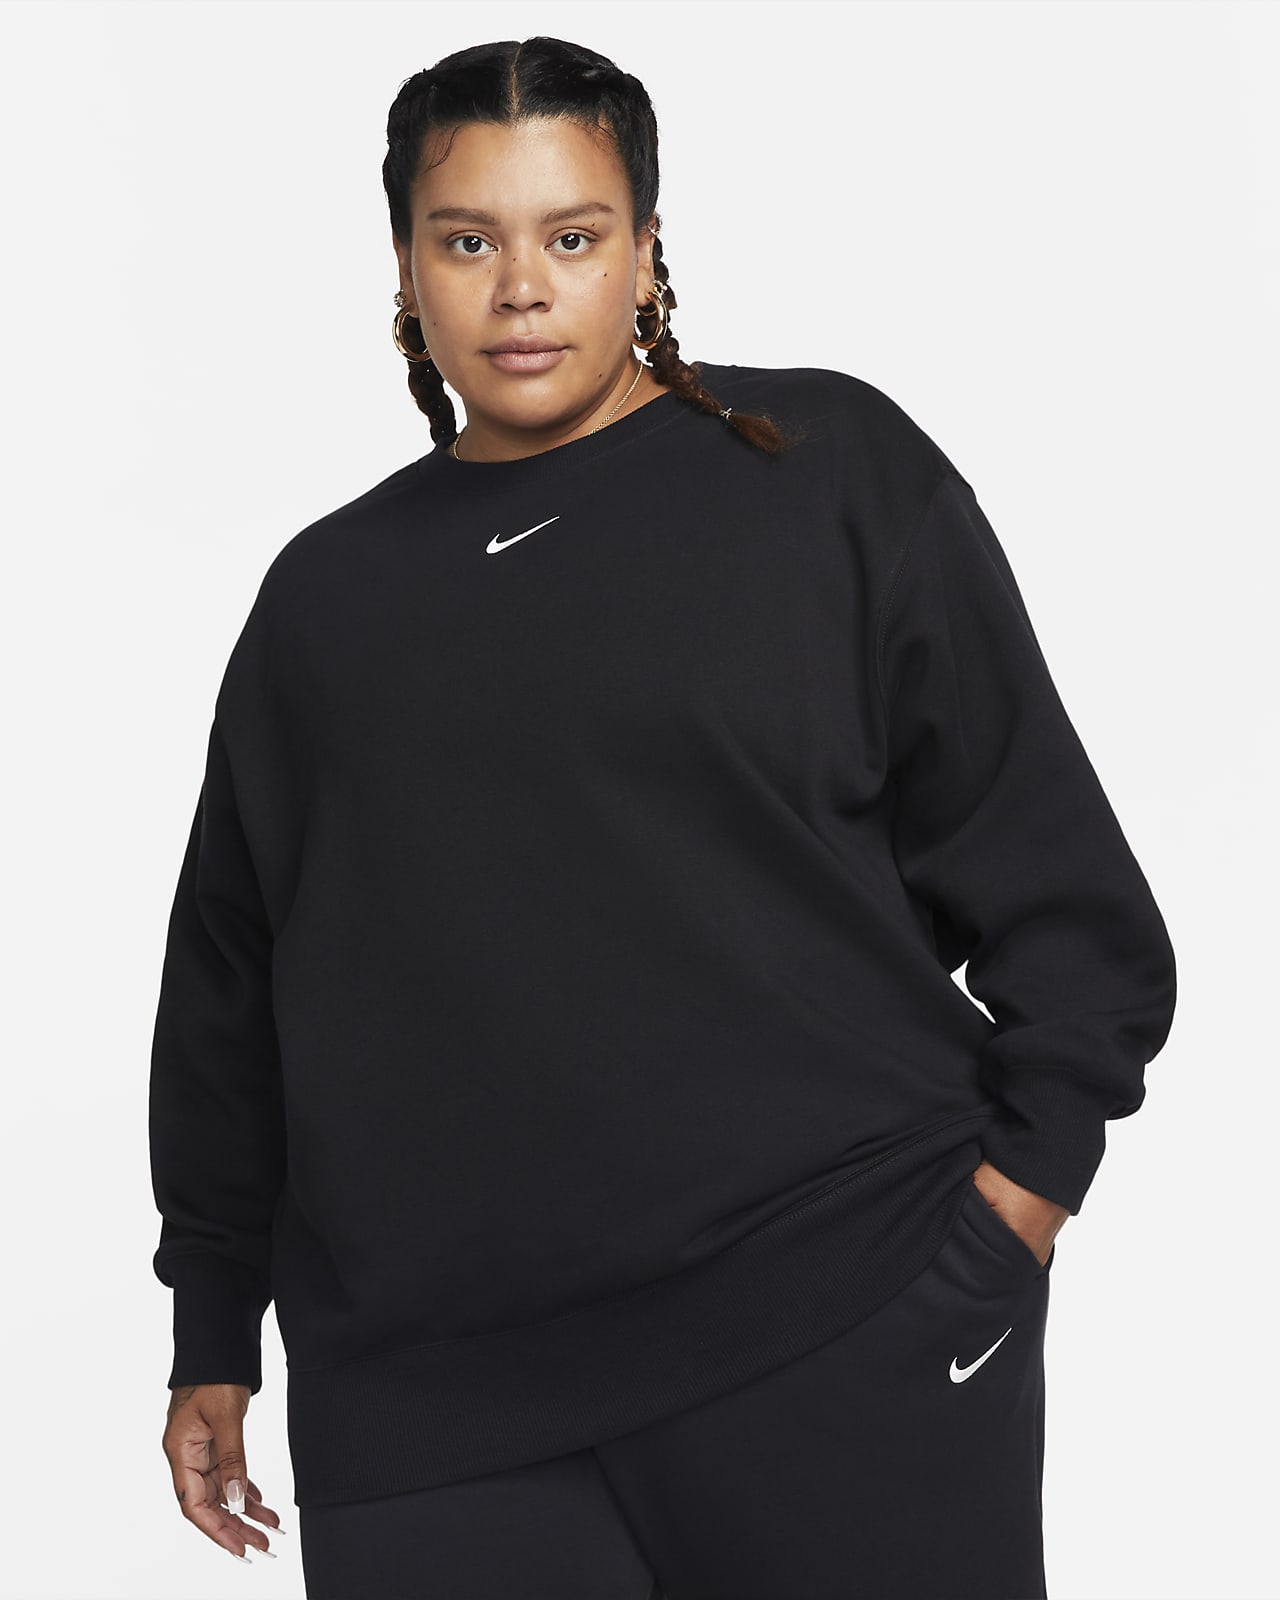 Nike Sportswear Phoenix Fleece Women's Oversized Crewneck Sweatshirt ...